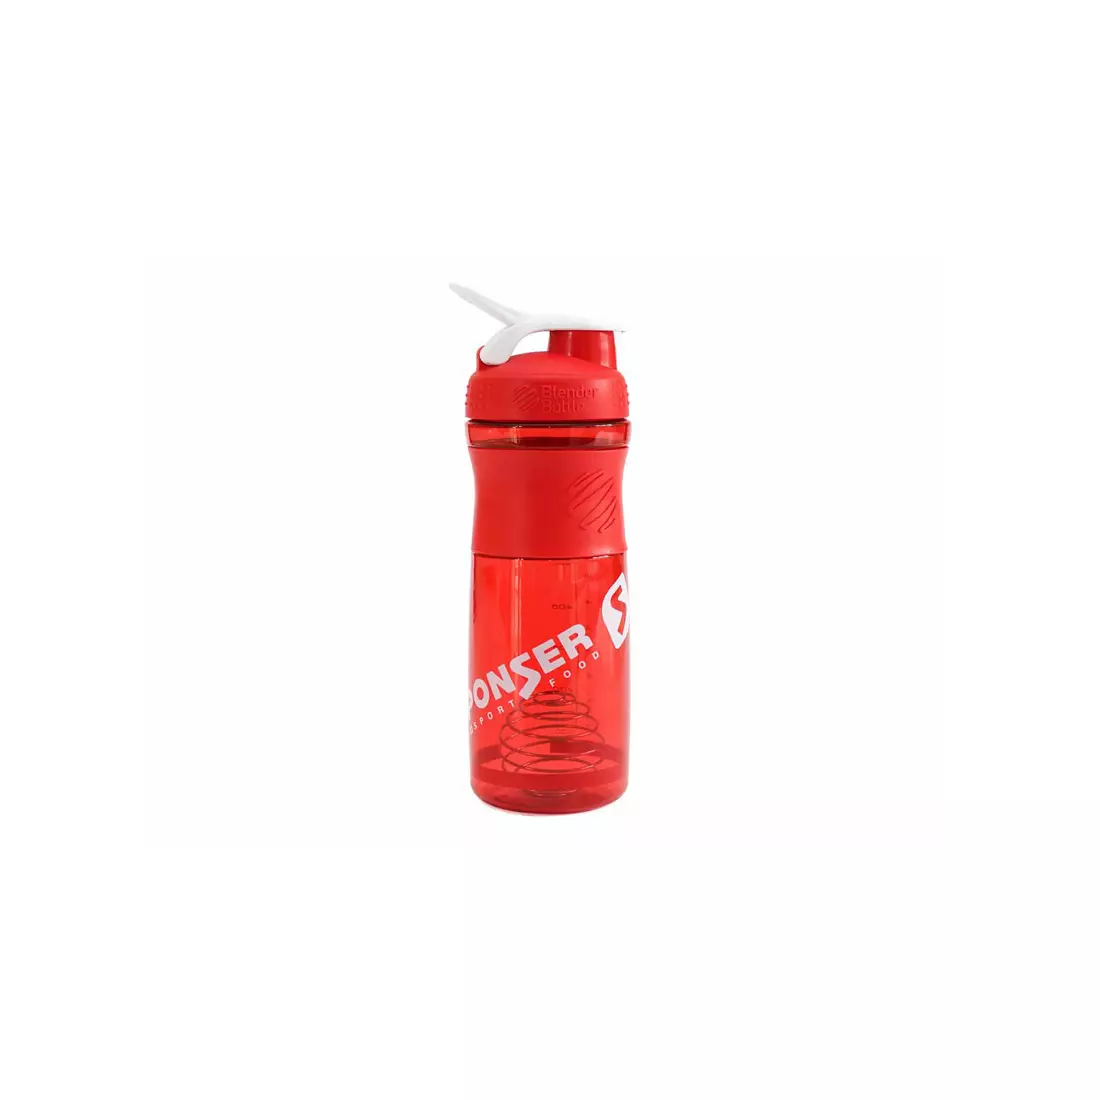 Shaker SPONSER SPORTMIXER BLENDER 828ml - rot transparent